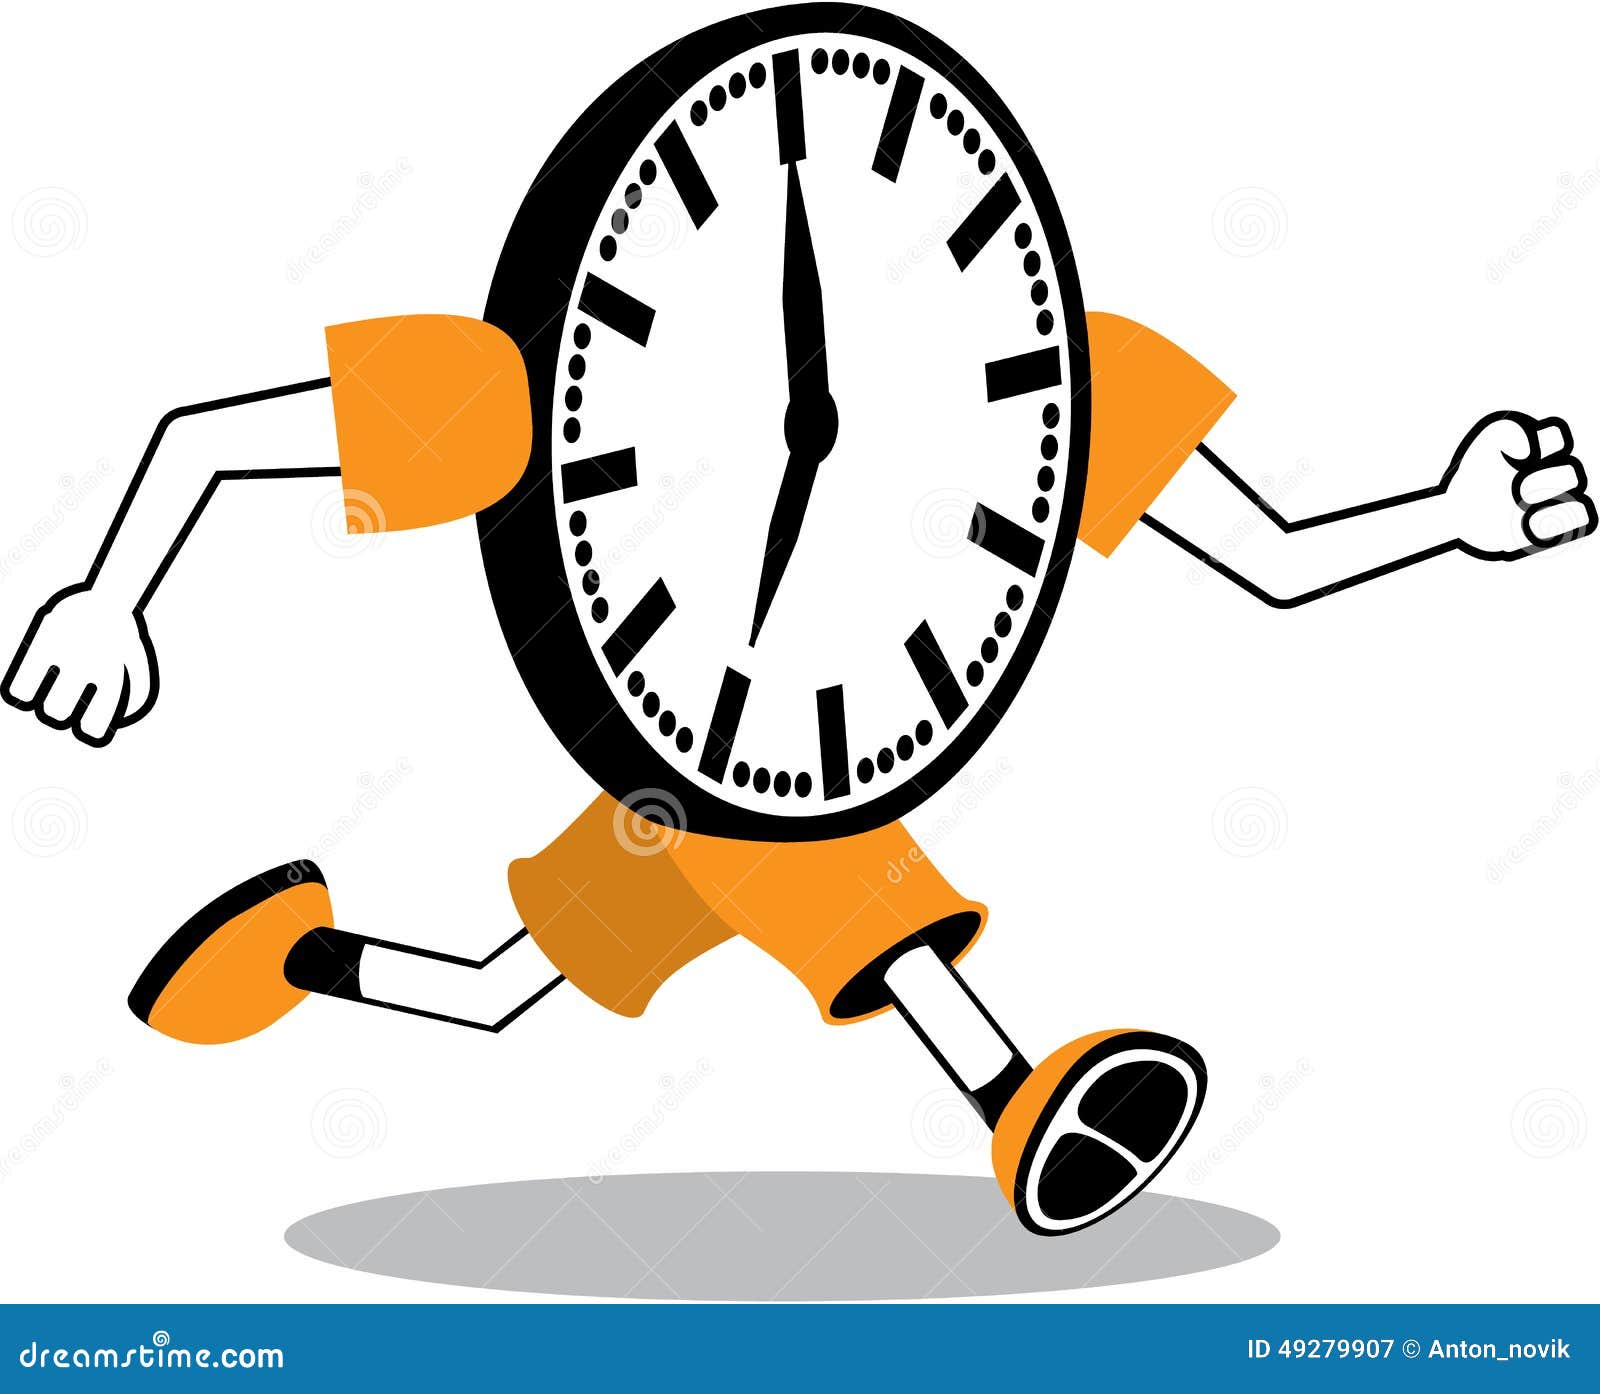 running-clock-illustration-clip-art-vector-eps-49279907.jpg